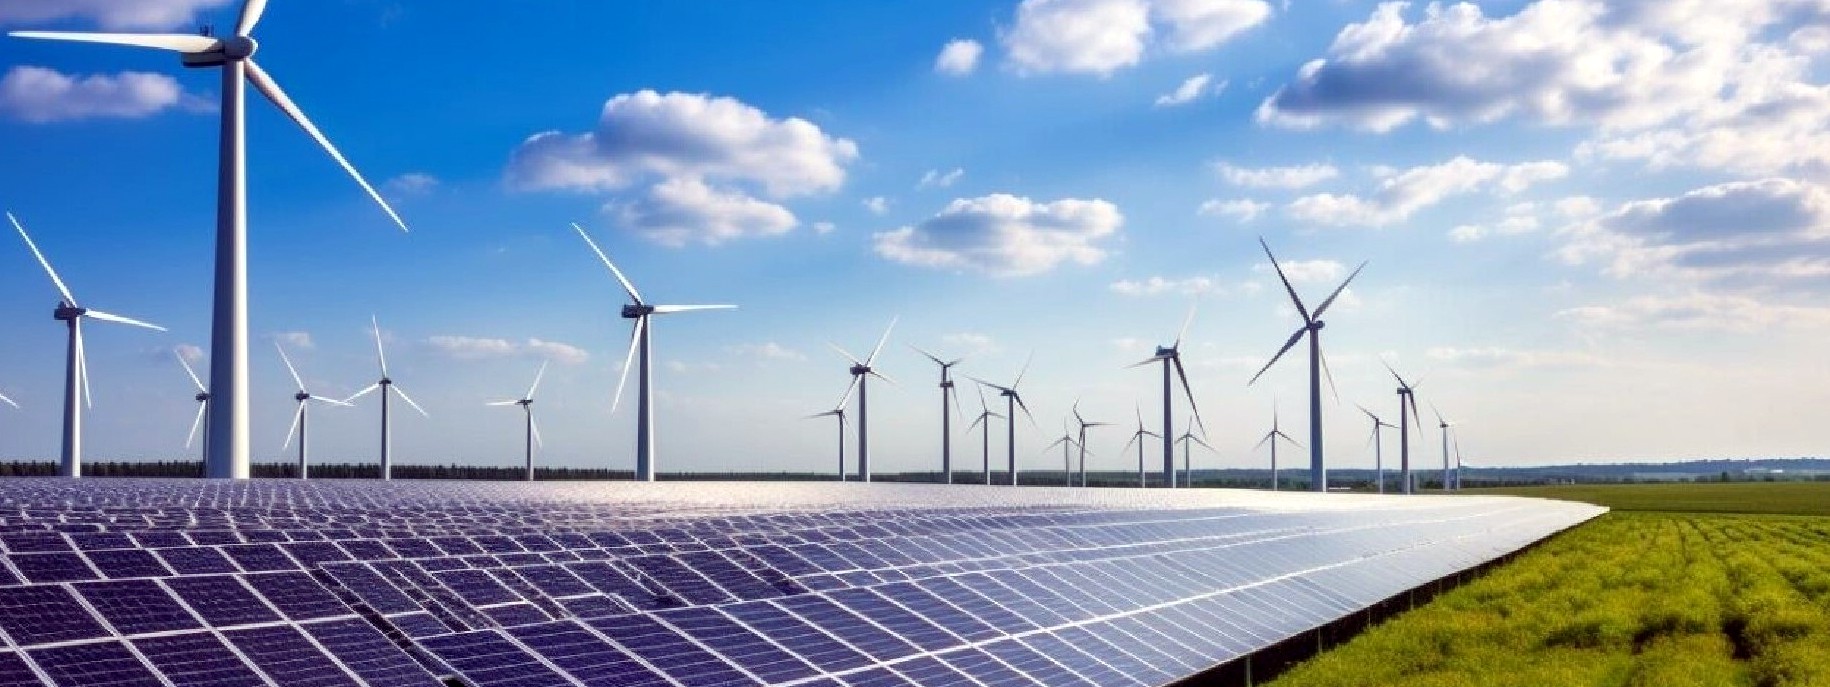 L'eolico e il fotovoltaico sono le due fonti rinnovabili più diffuse, ma hanno lo svantaggio di non poter garantire un flusso di energia costante